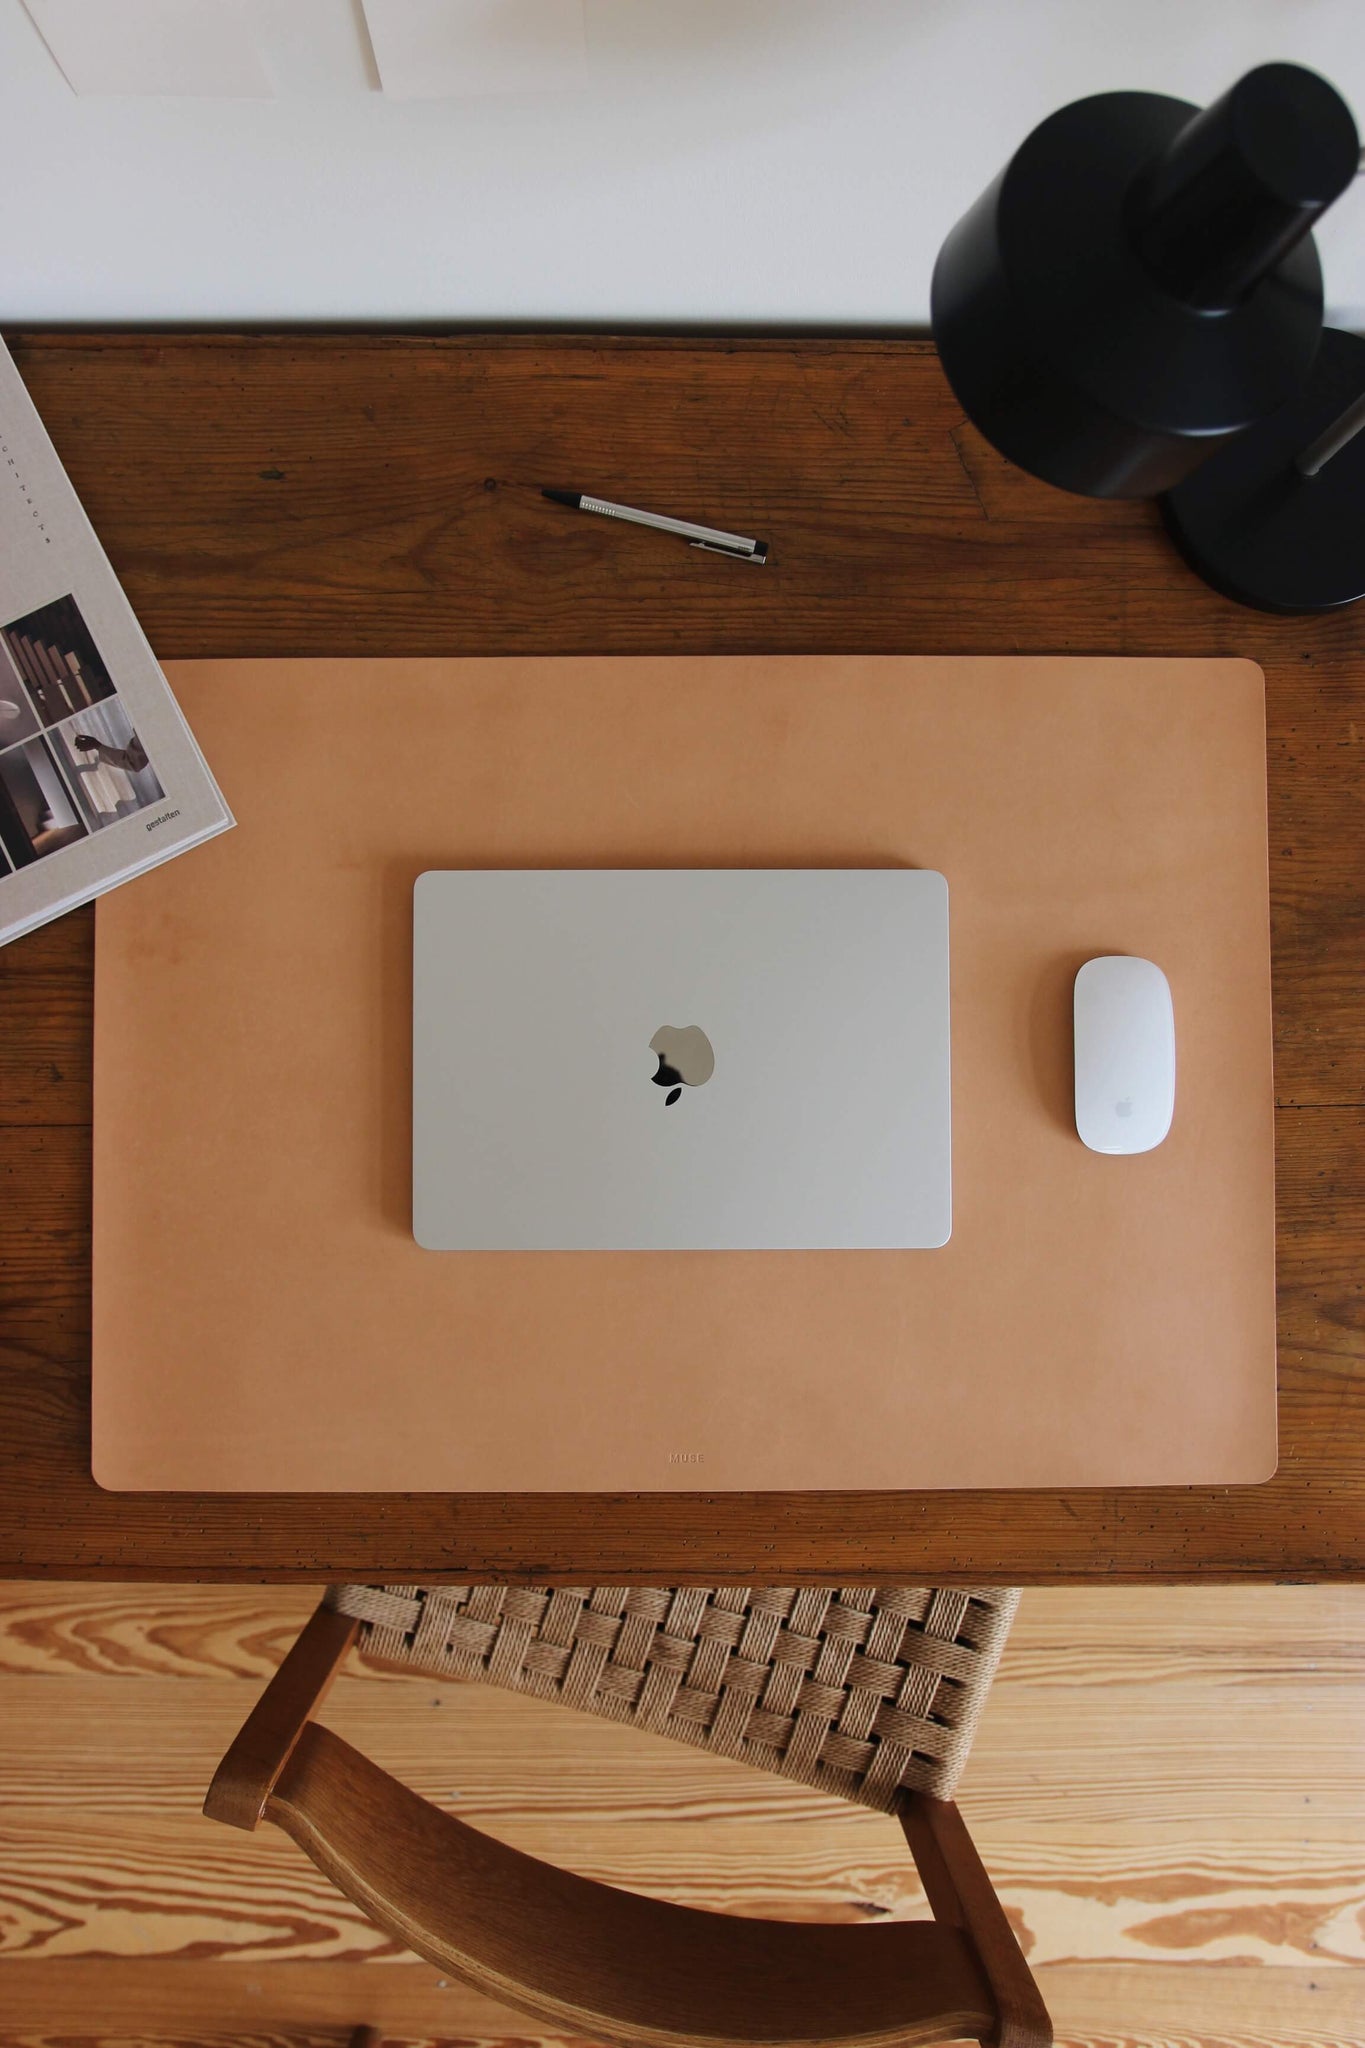 Leder Schreibtischunterlage in Natural auf einem Schreibtisch aus Holz und auf dieser befindet sich ein zugeklapptes MacBook und eine Maus.